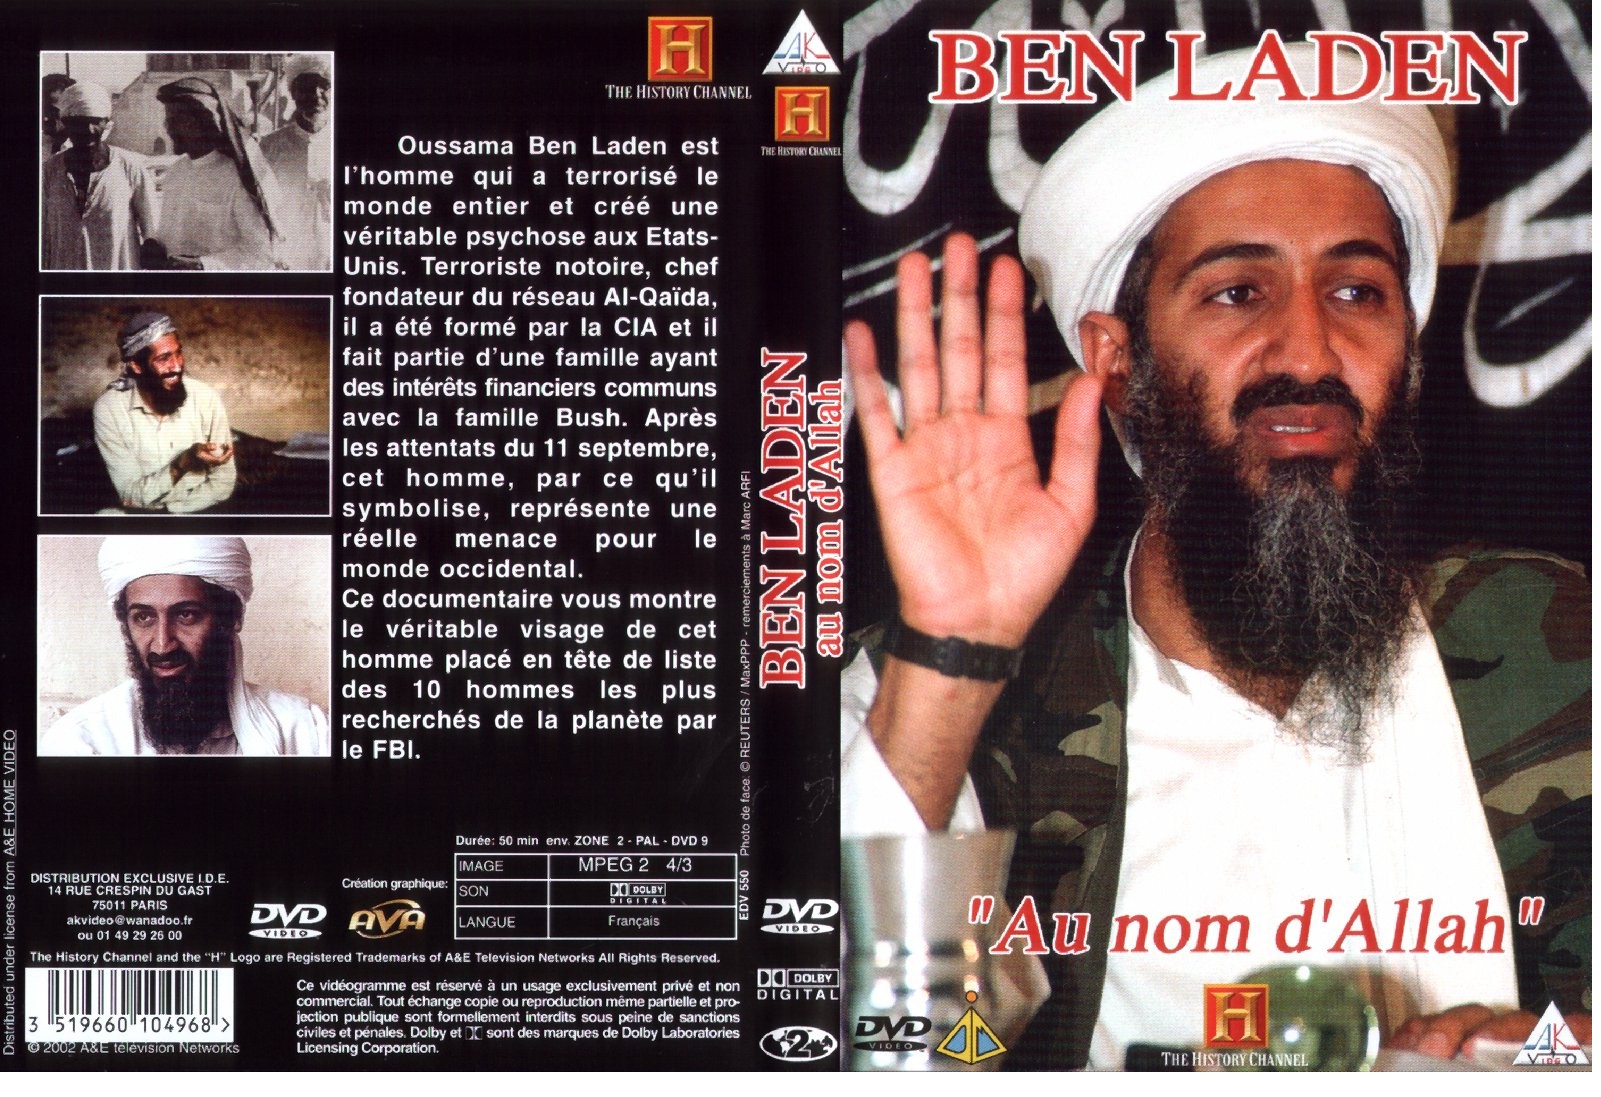 Jaquette DVD Ben Laden au nom d